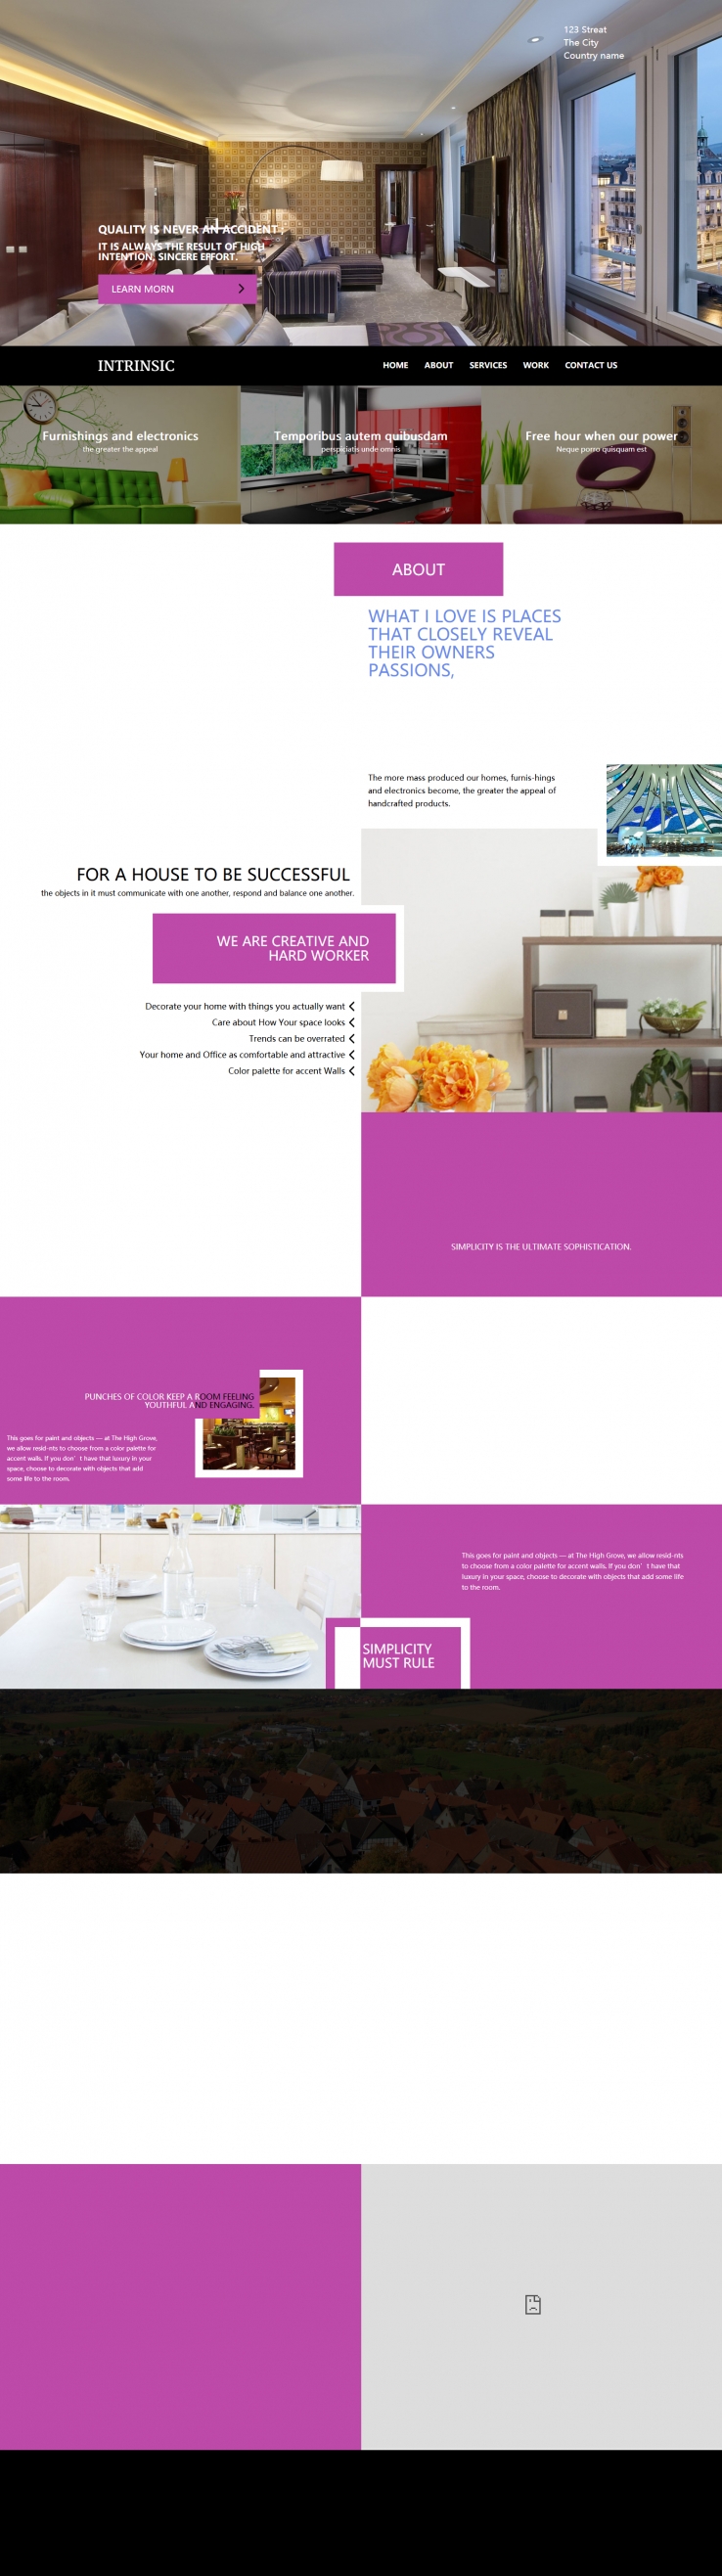 粉色大气风格的室内装修设计网站css模板